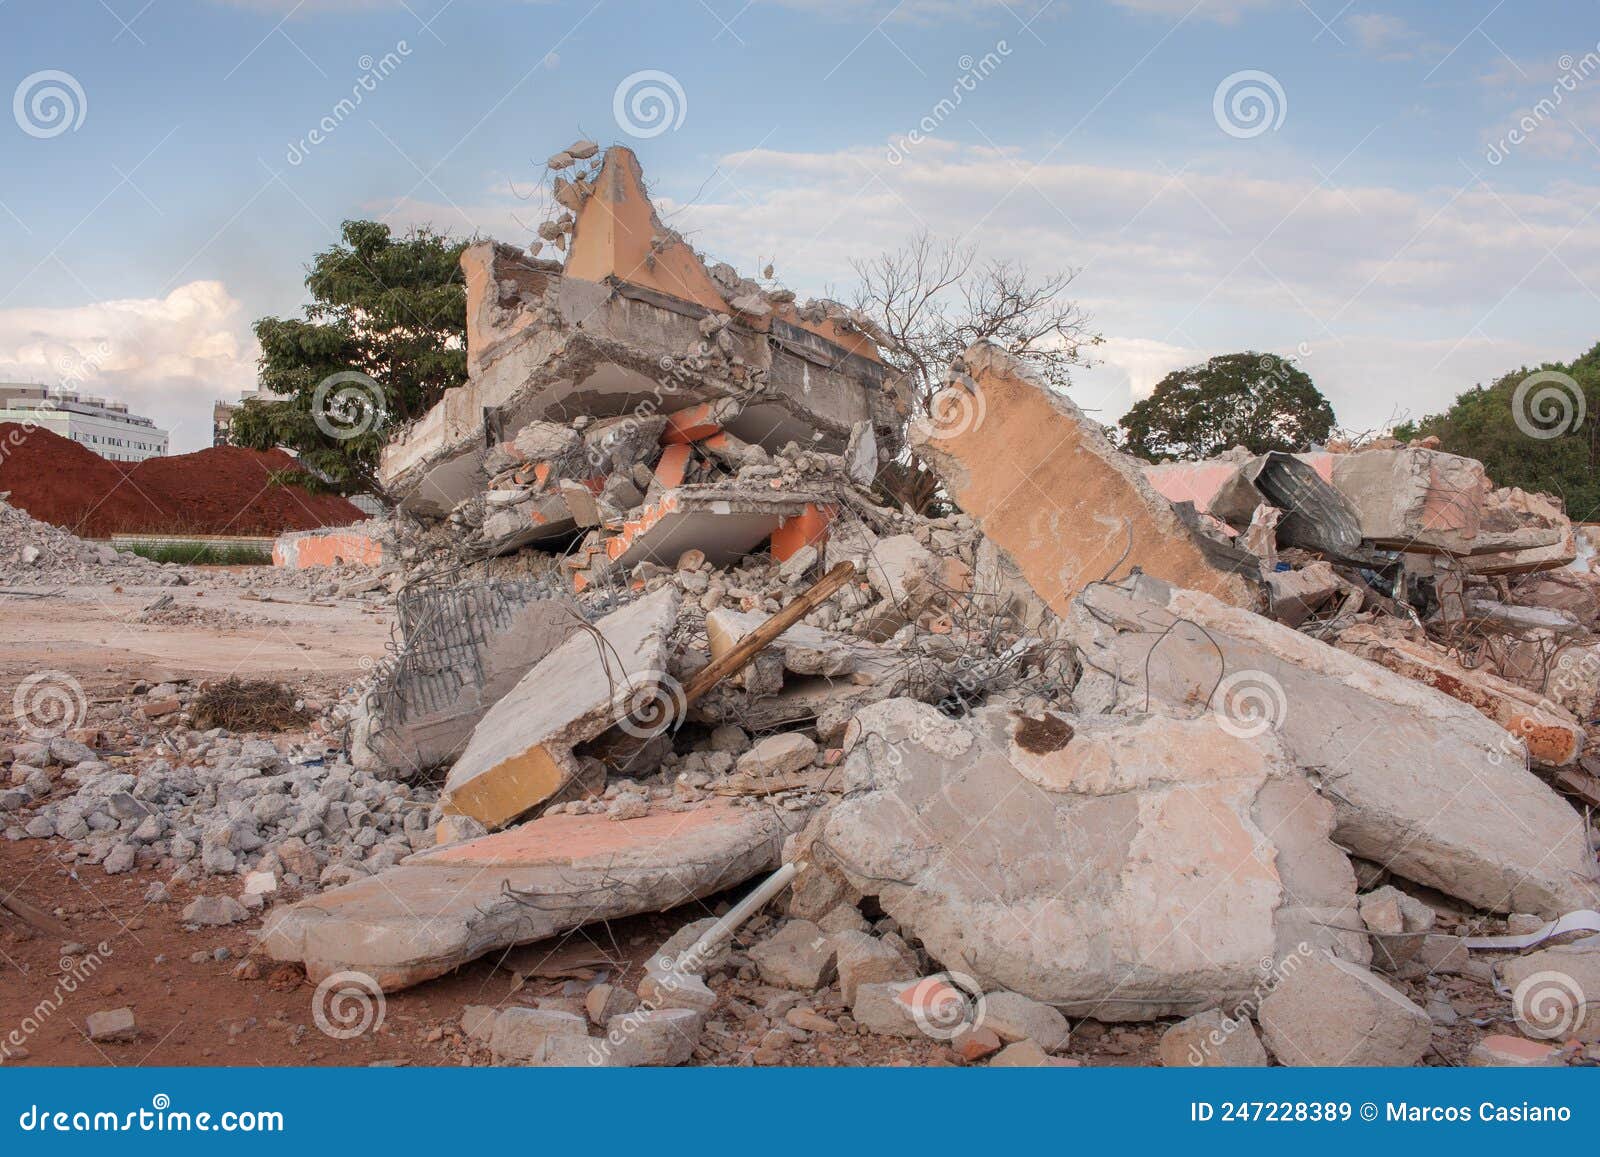 the concrete rubble remains of a building